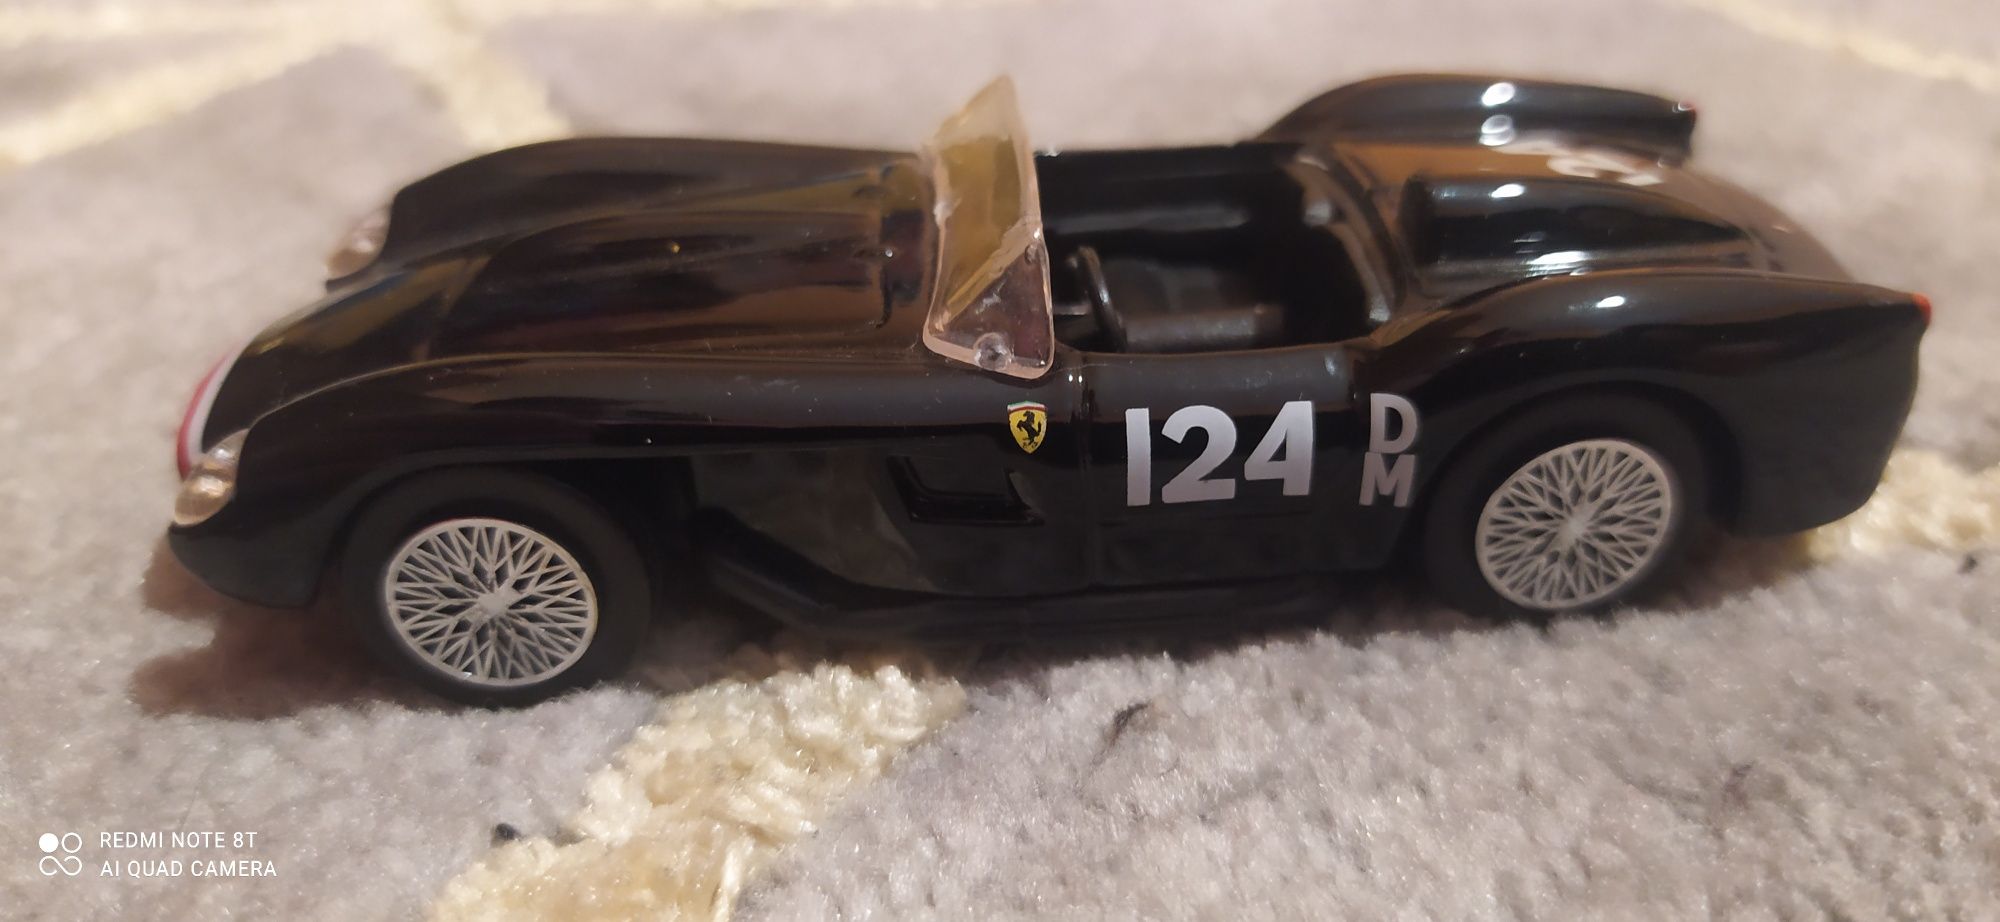 Samochodzik Ferrari kolekcja shell